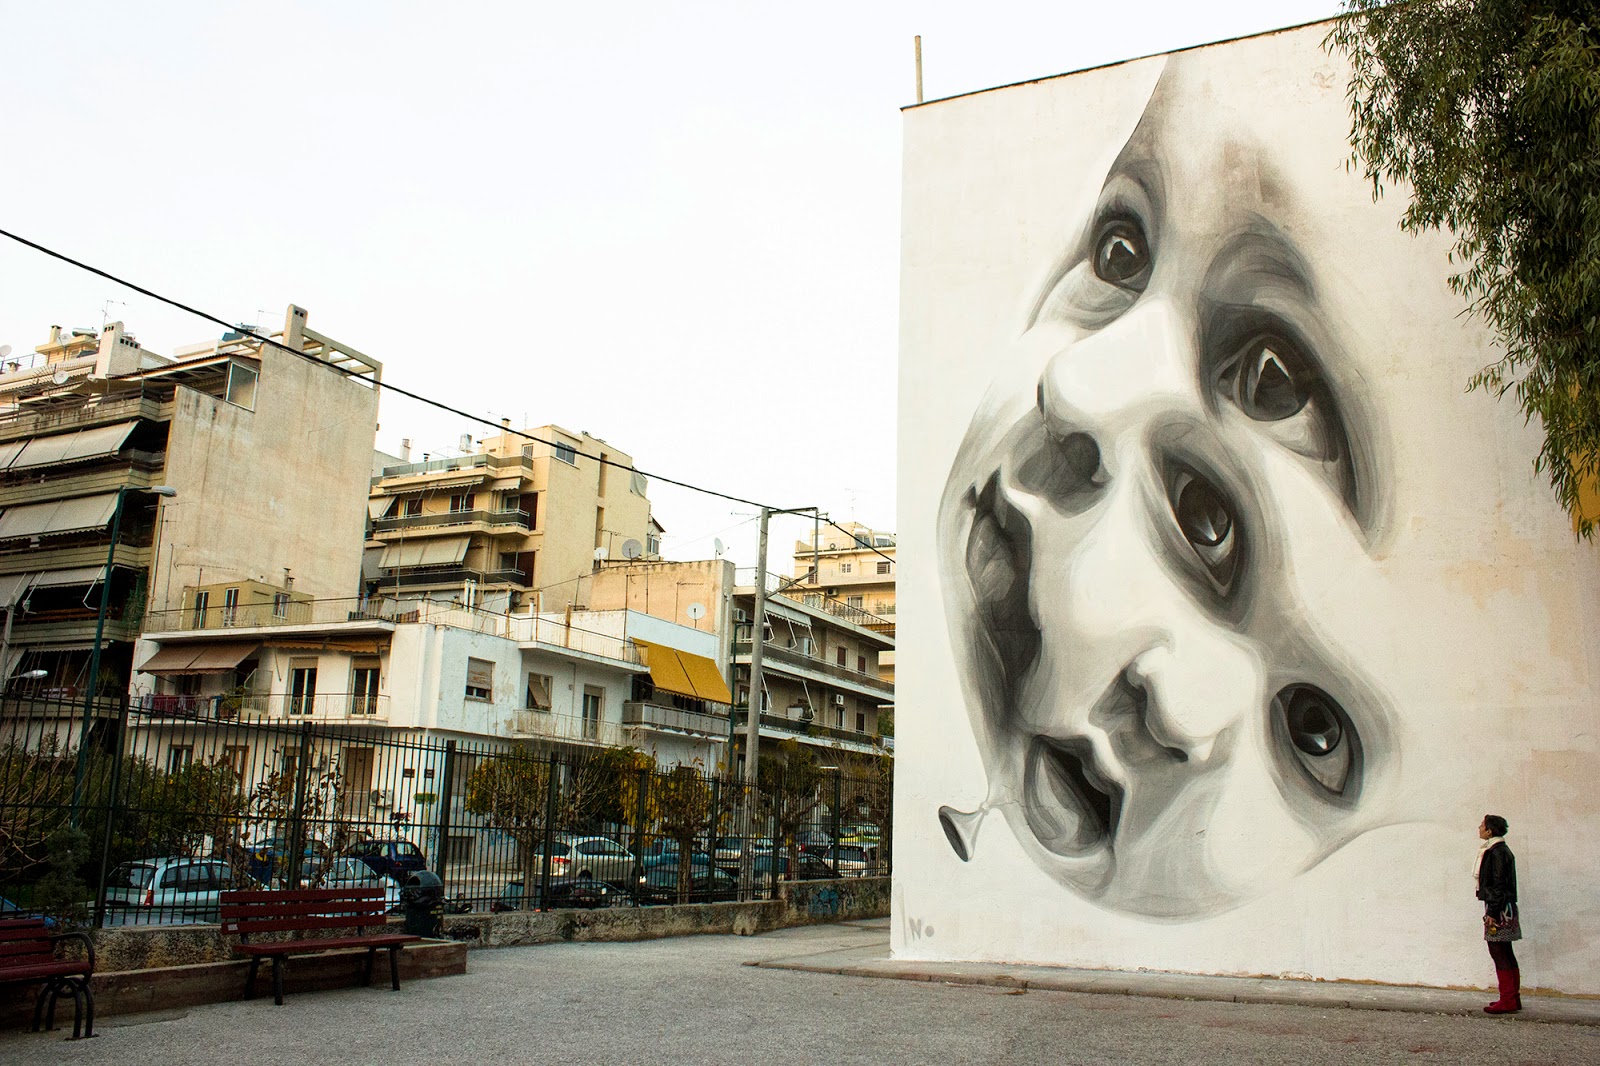 Η street art στην Αθήνα μέσα από το βιβλίο “Τα μάτια της πόλης”